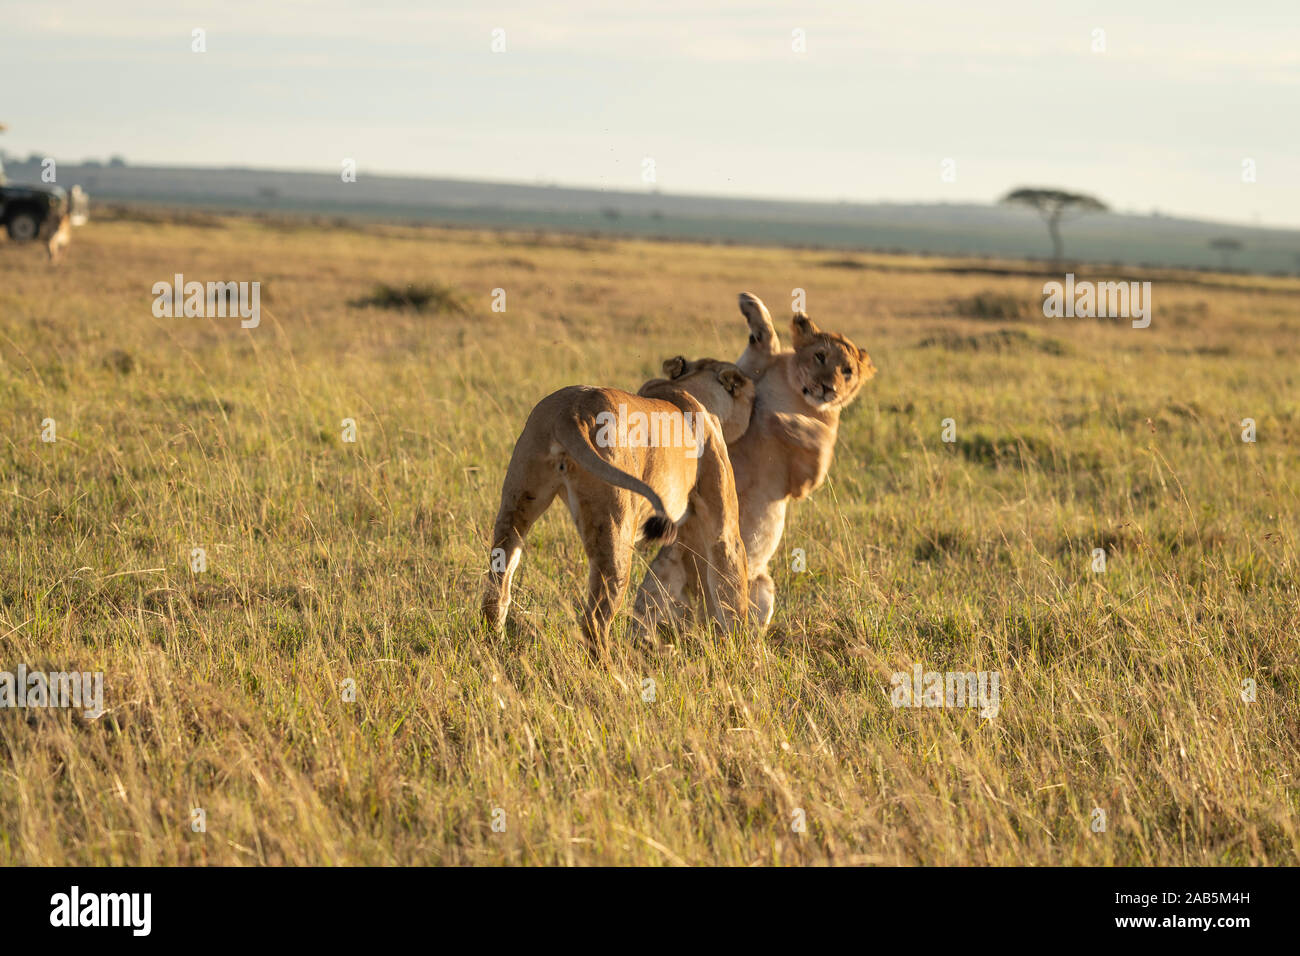 Lion Cubs (Panthera leo) playing, prancing, tussling and running in the Masai Mara in Kenya Stock Photo